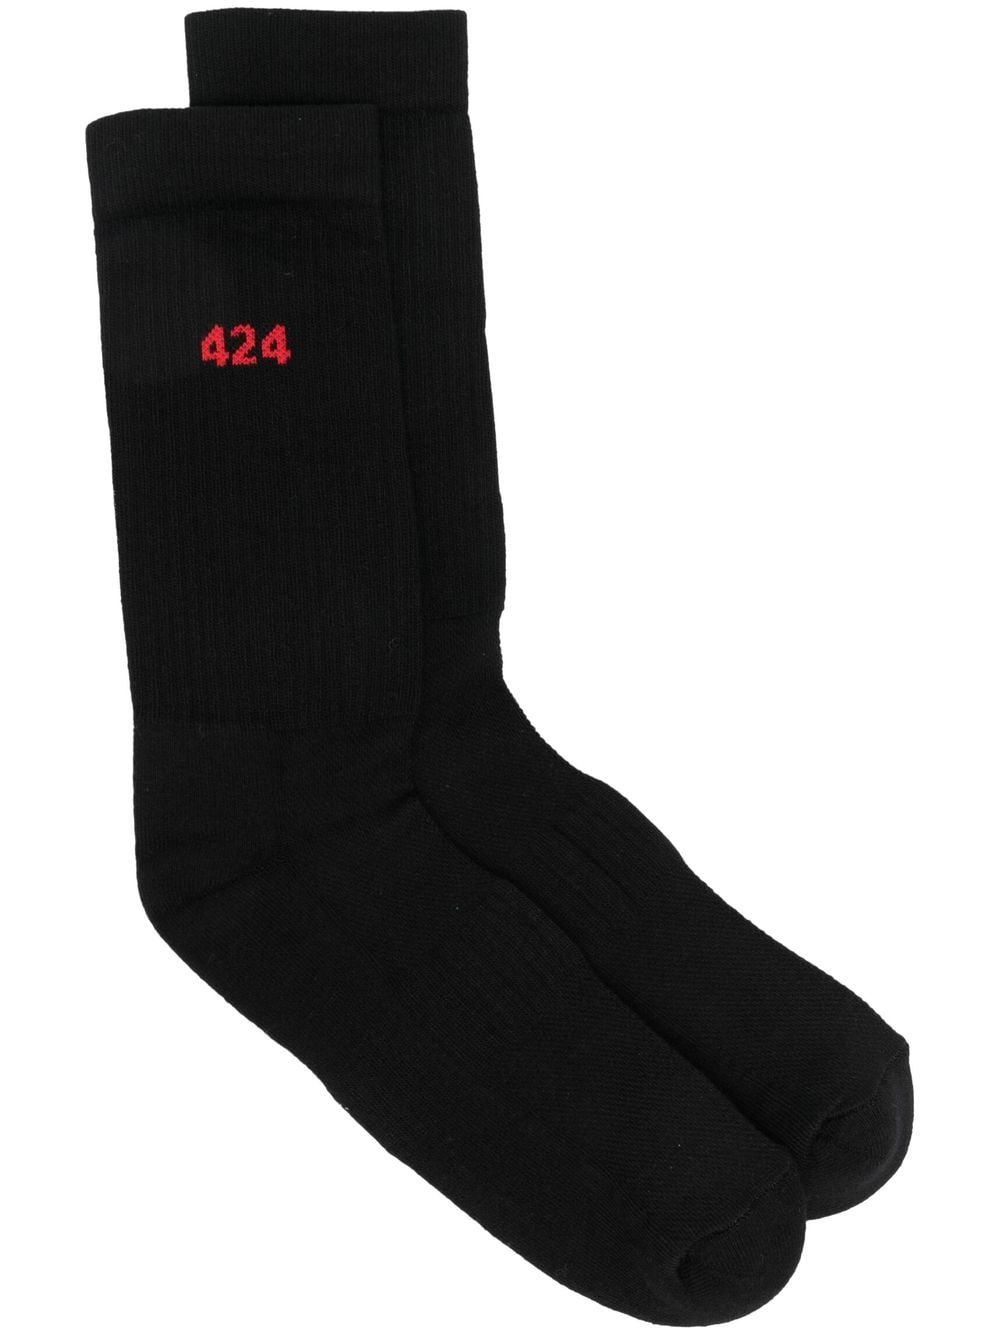 intarsia-logo socks